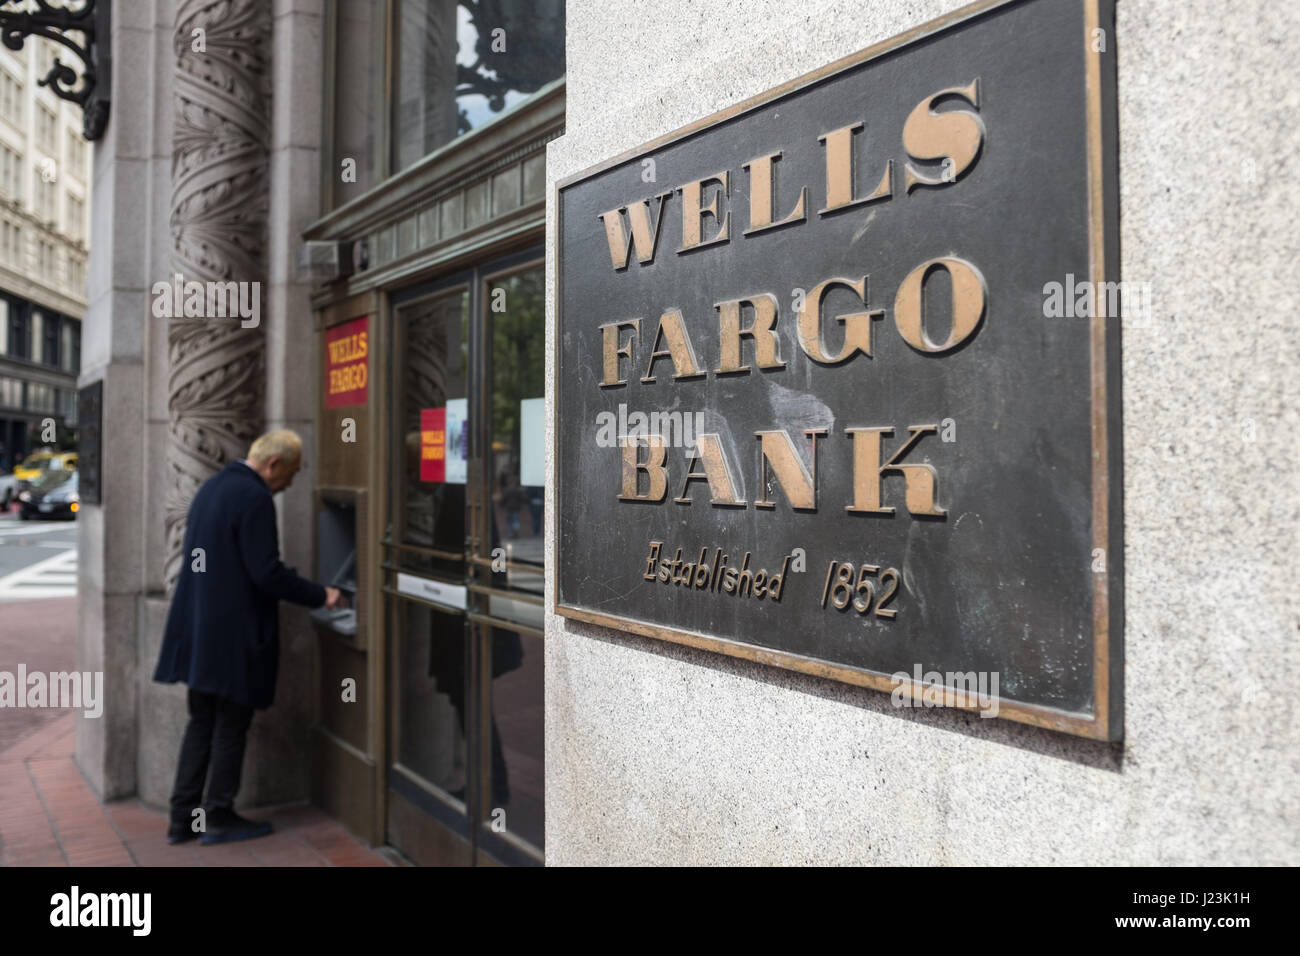 Wells Fargo Bank exterior, San Francisco, California Stock Photo